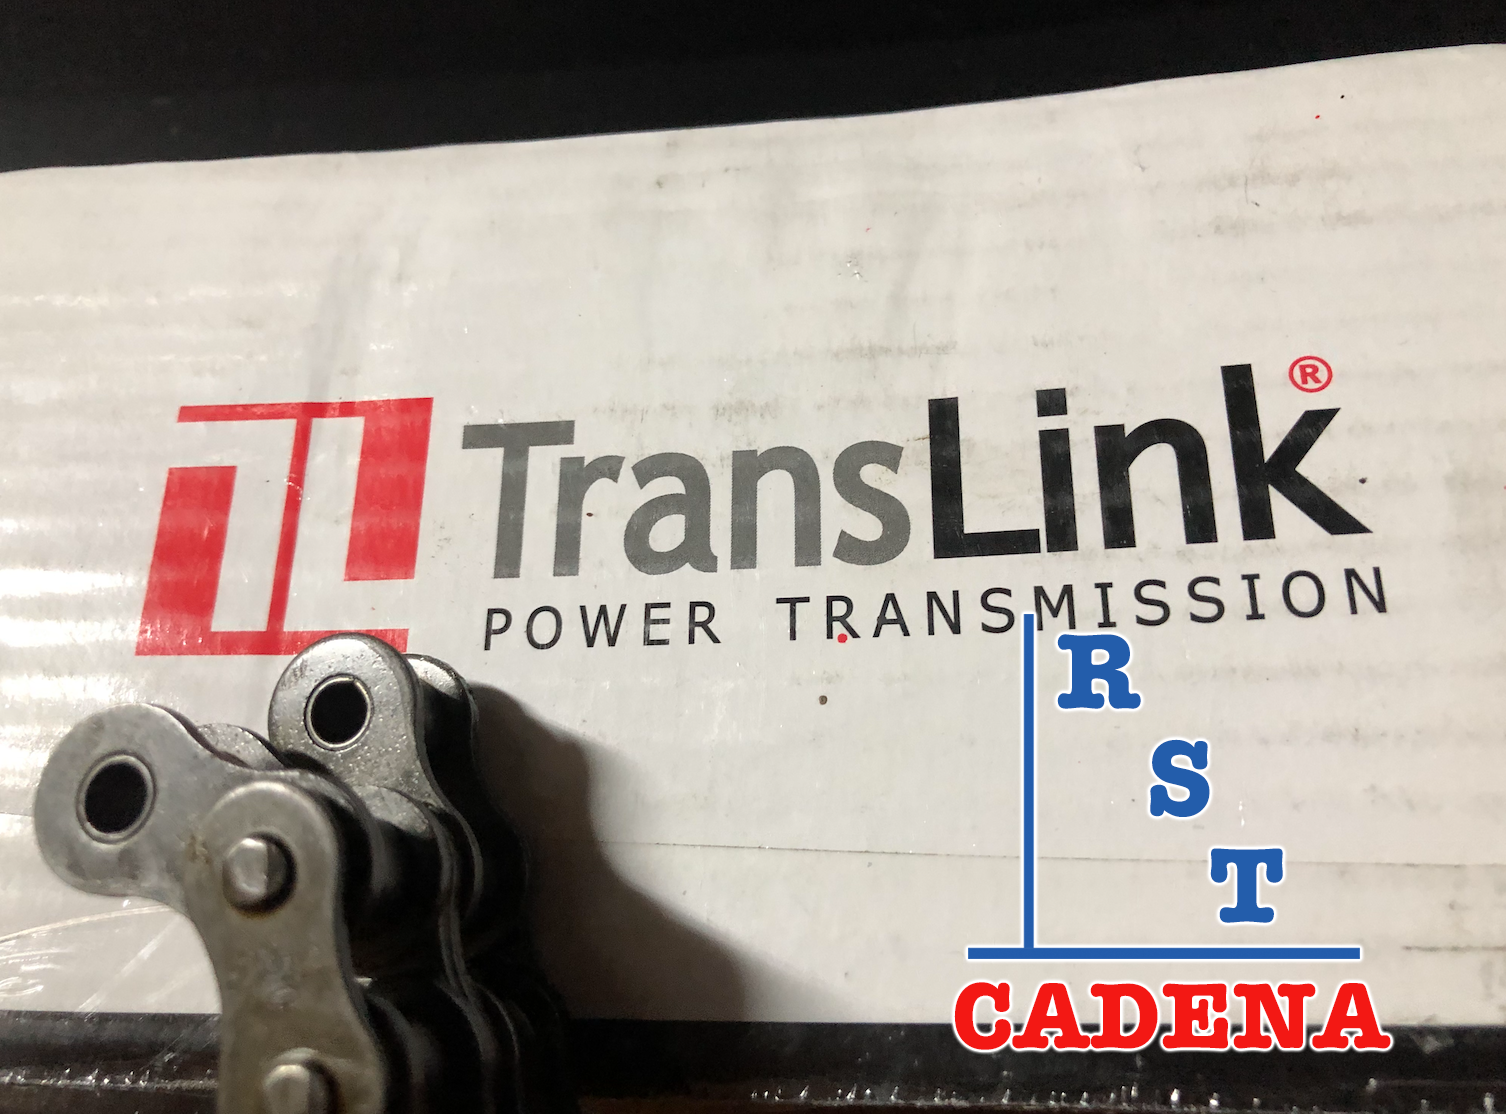 Caja de cadena paso 50-2 TransLink